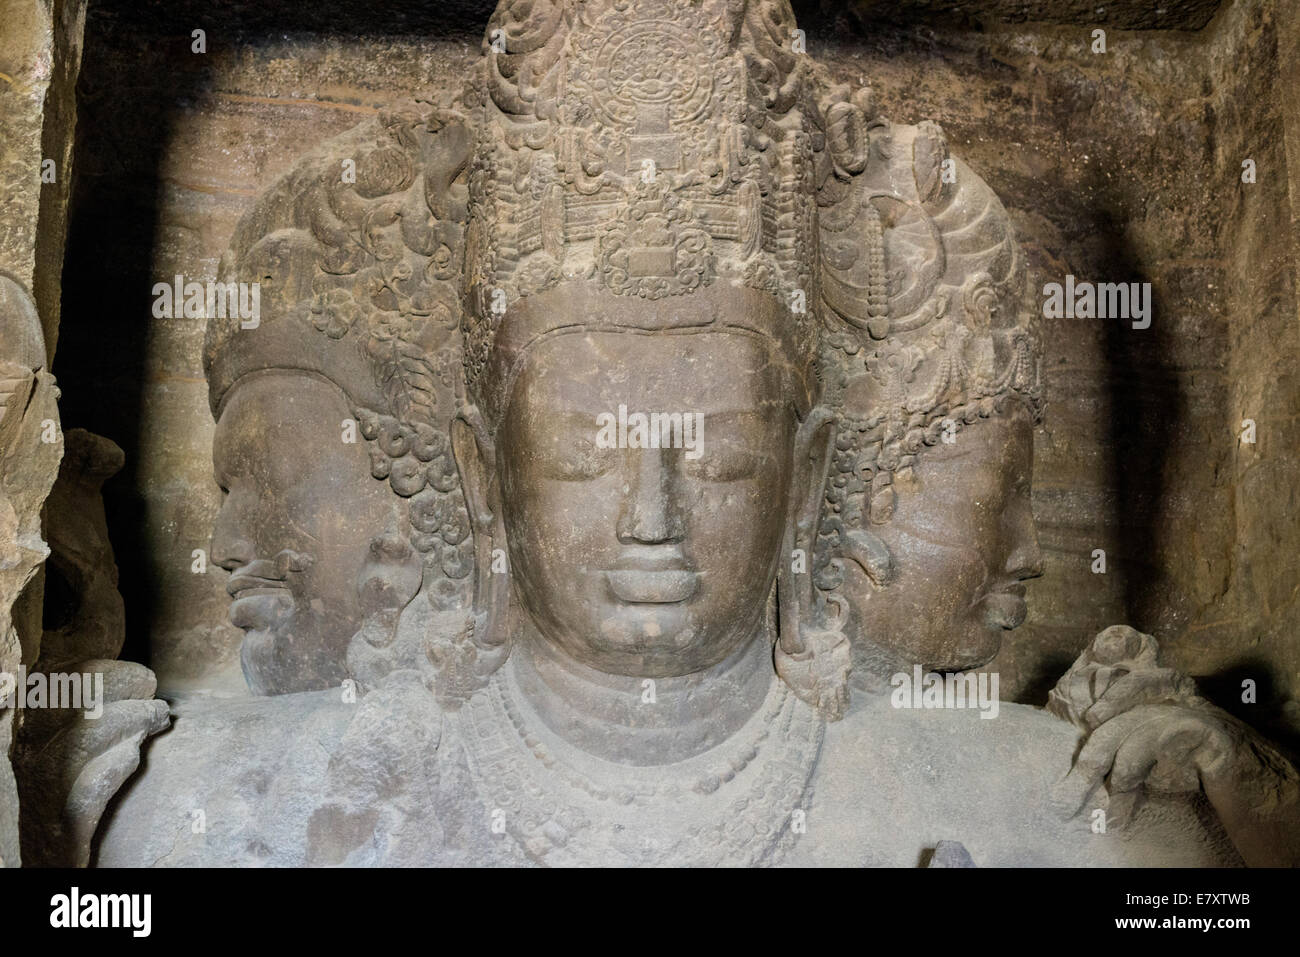 Die 3 Gesichter des Shiva, geschnitzt aus festem Gestein, innerhalb der Haupthöhle auf Elephanta Insel, Mumbai, Maharashtra, Indien Stockfoto